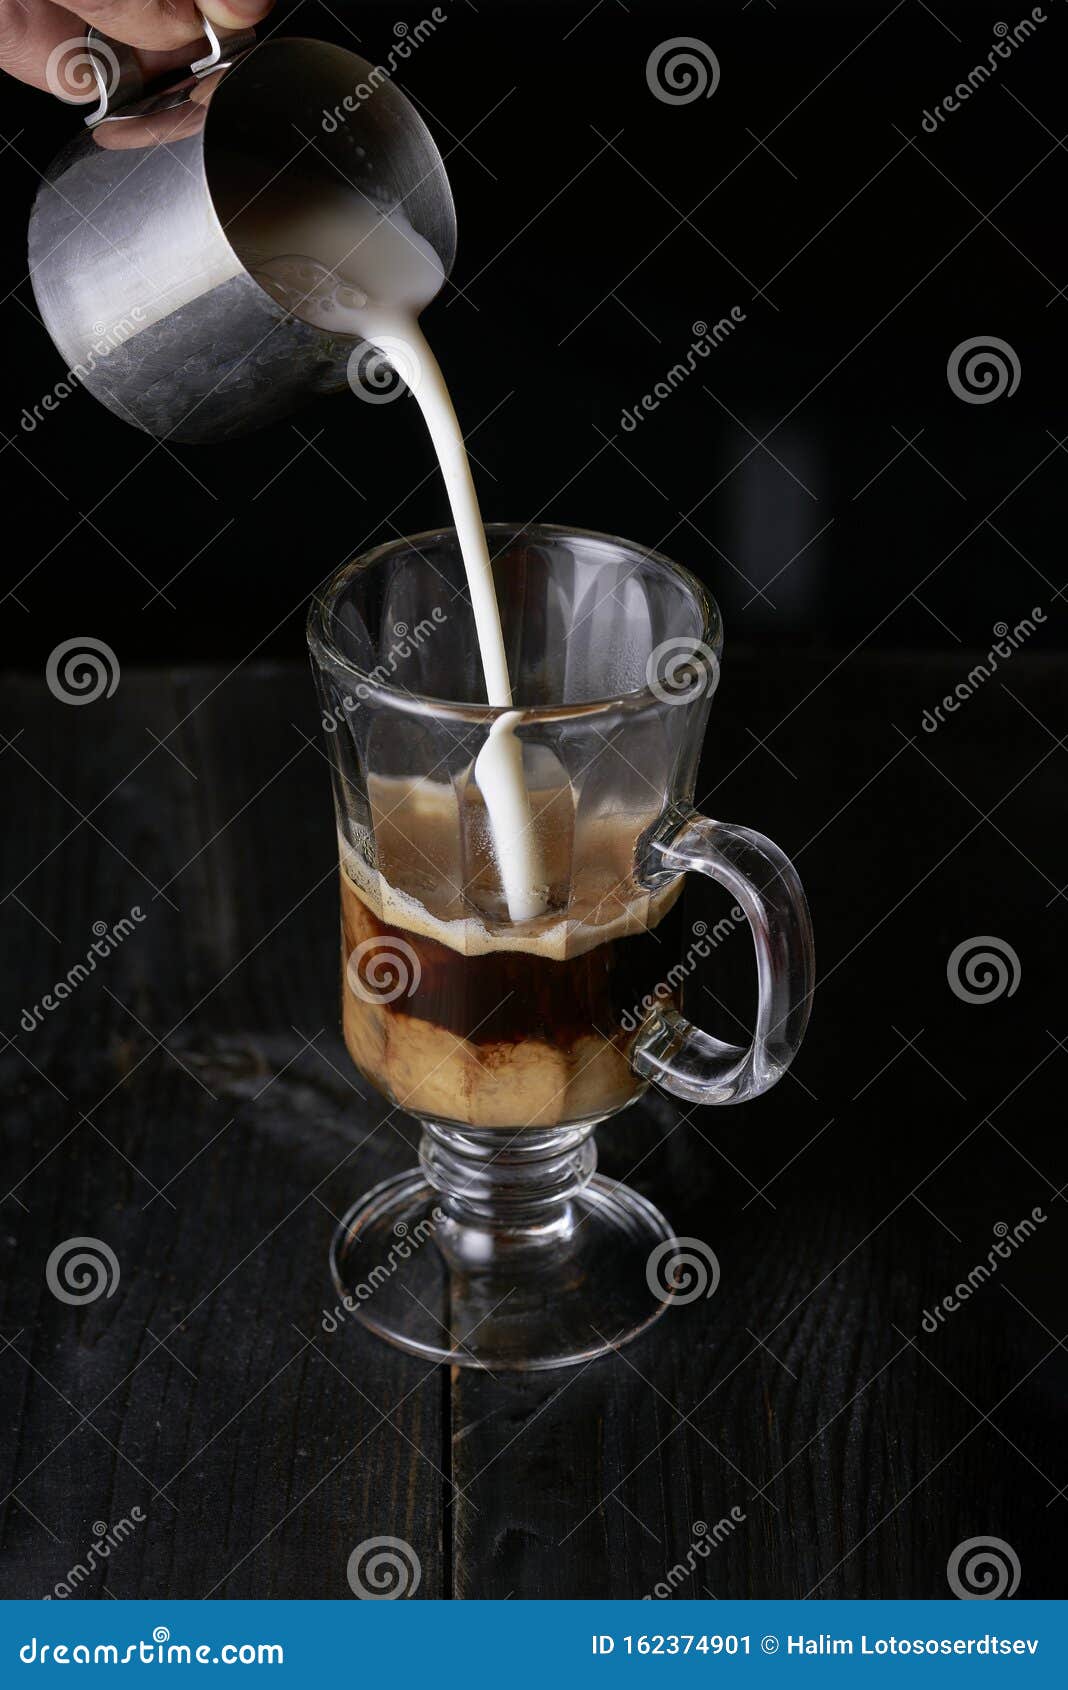 Leche De Una Jarra Barista En Un Vaso Con Café Imagen de archivo - Imagen  de oscuro, restaurante: 162374901